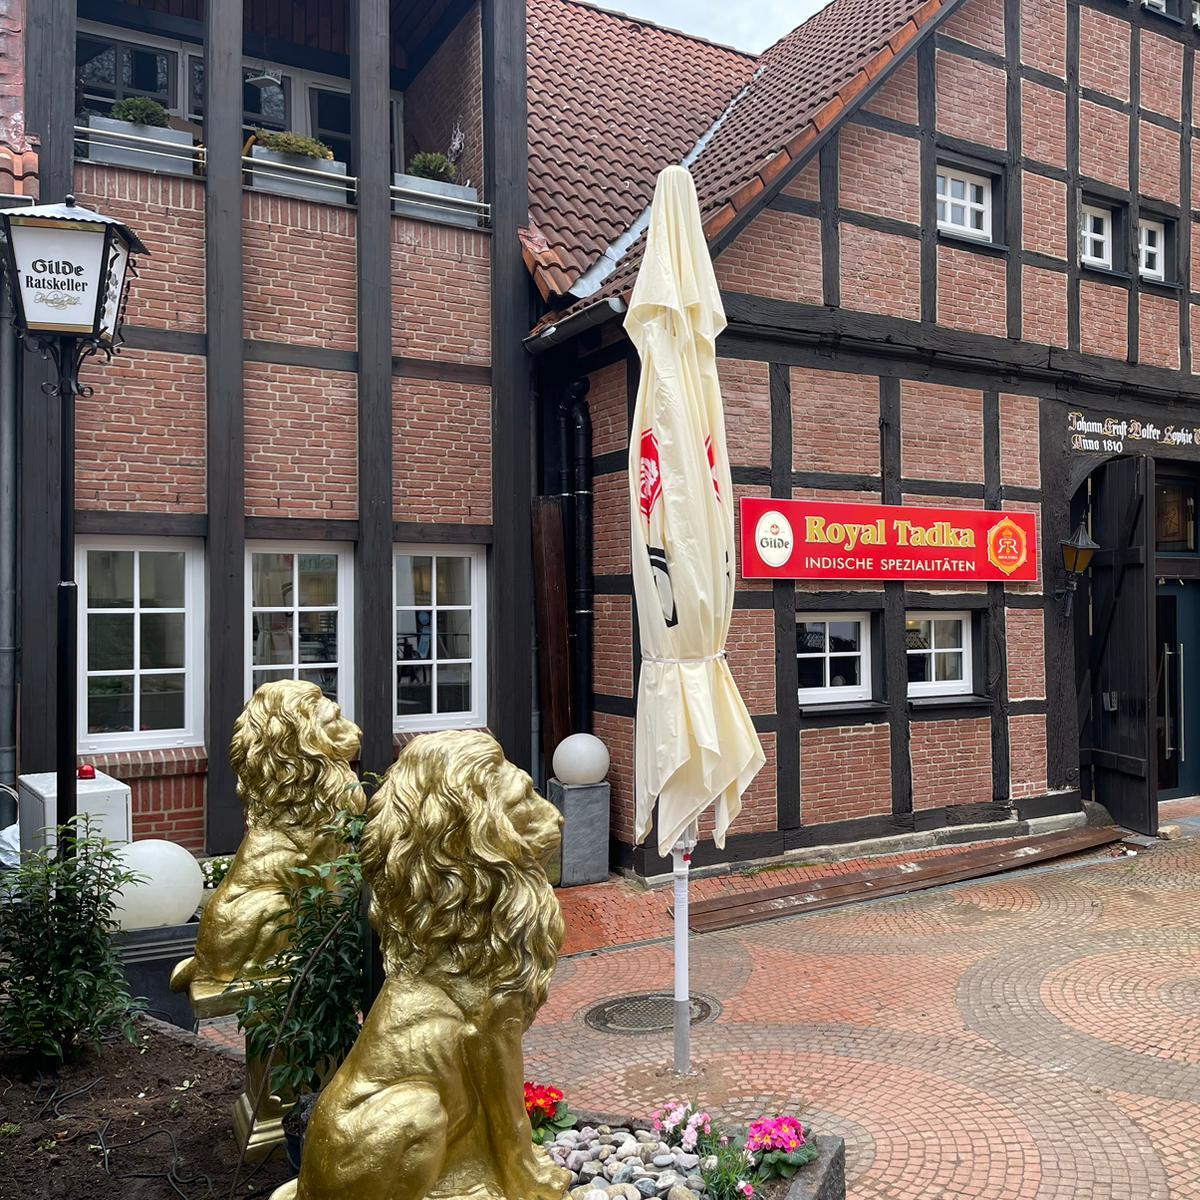 Restaurant "Restaurant Royal Tadka" in Barsinghausen